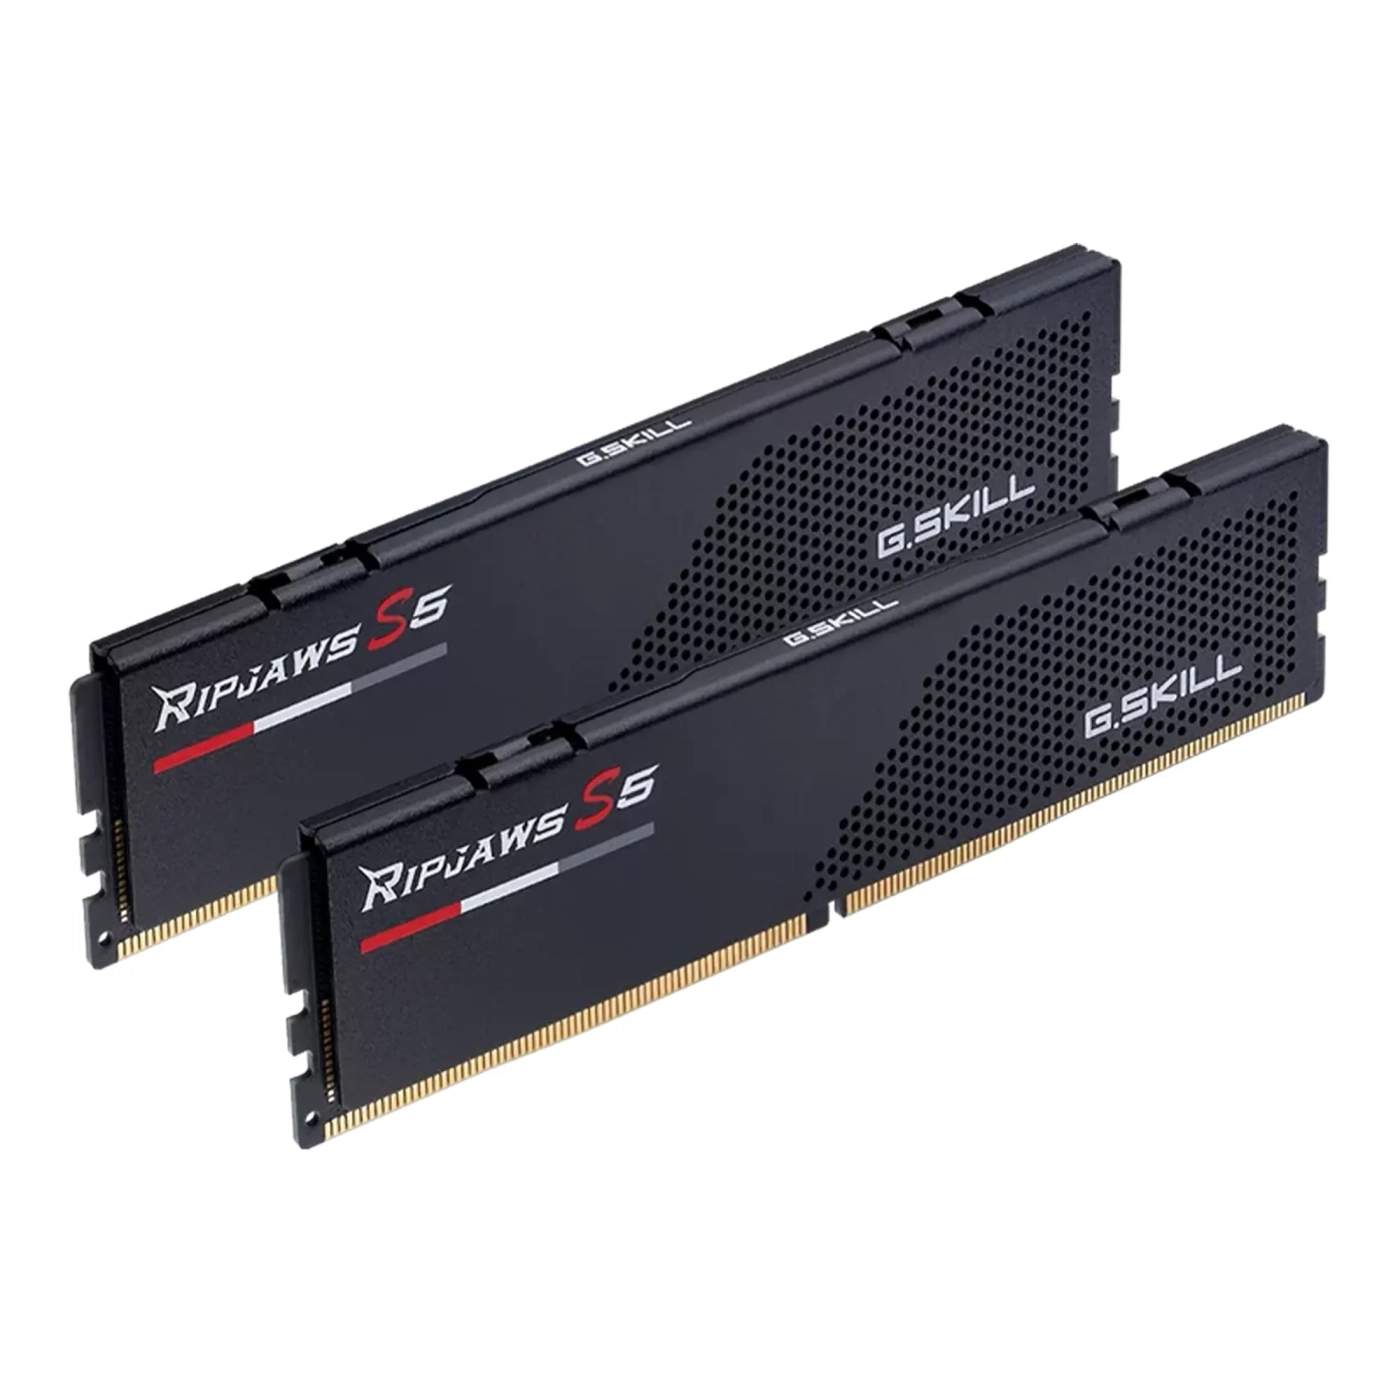 Купить Модуль памяти G.Skill Ripjaws S5 DDR5-5600 64GB (2x32GB) CL36-36-36-89 1.25V - фото 1